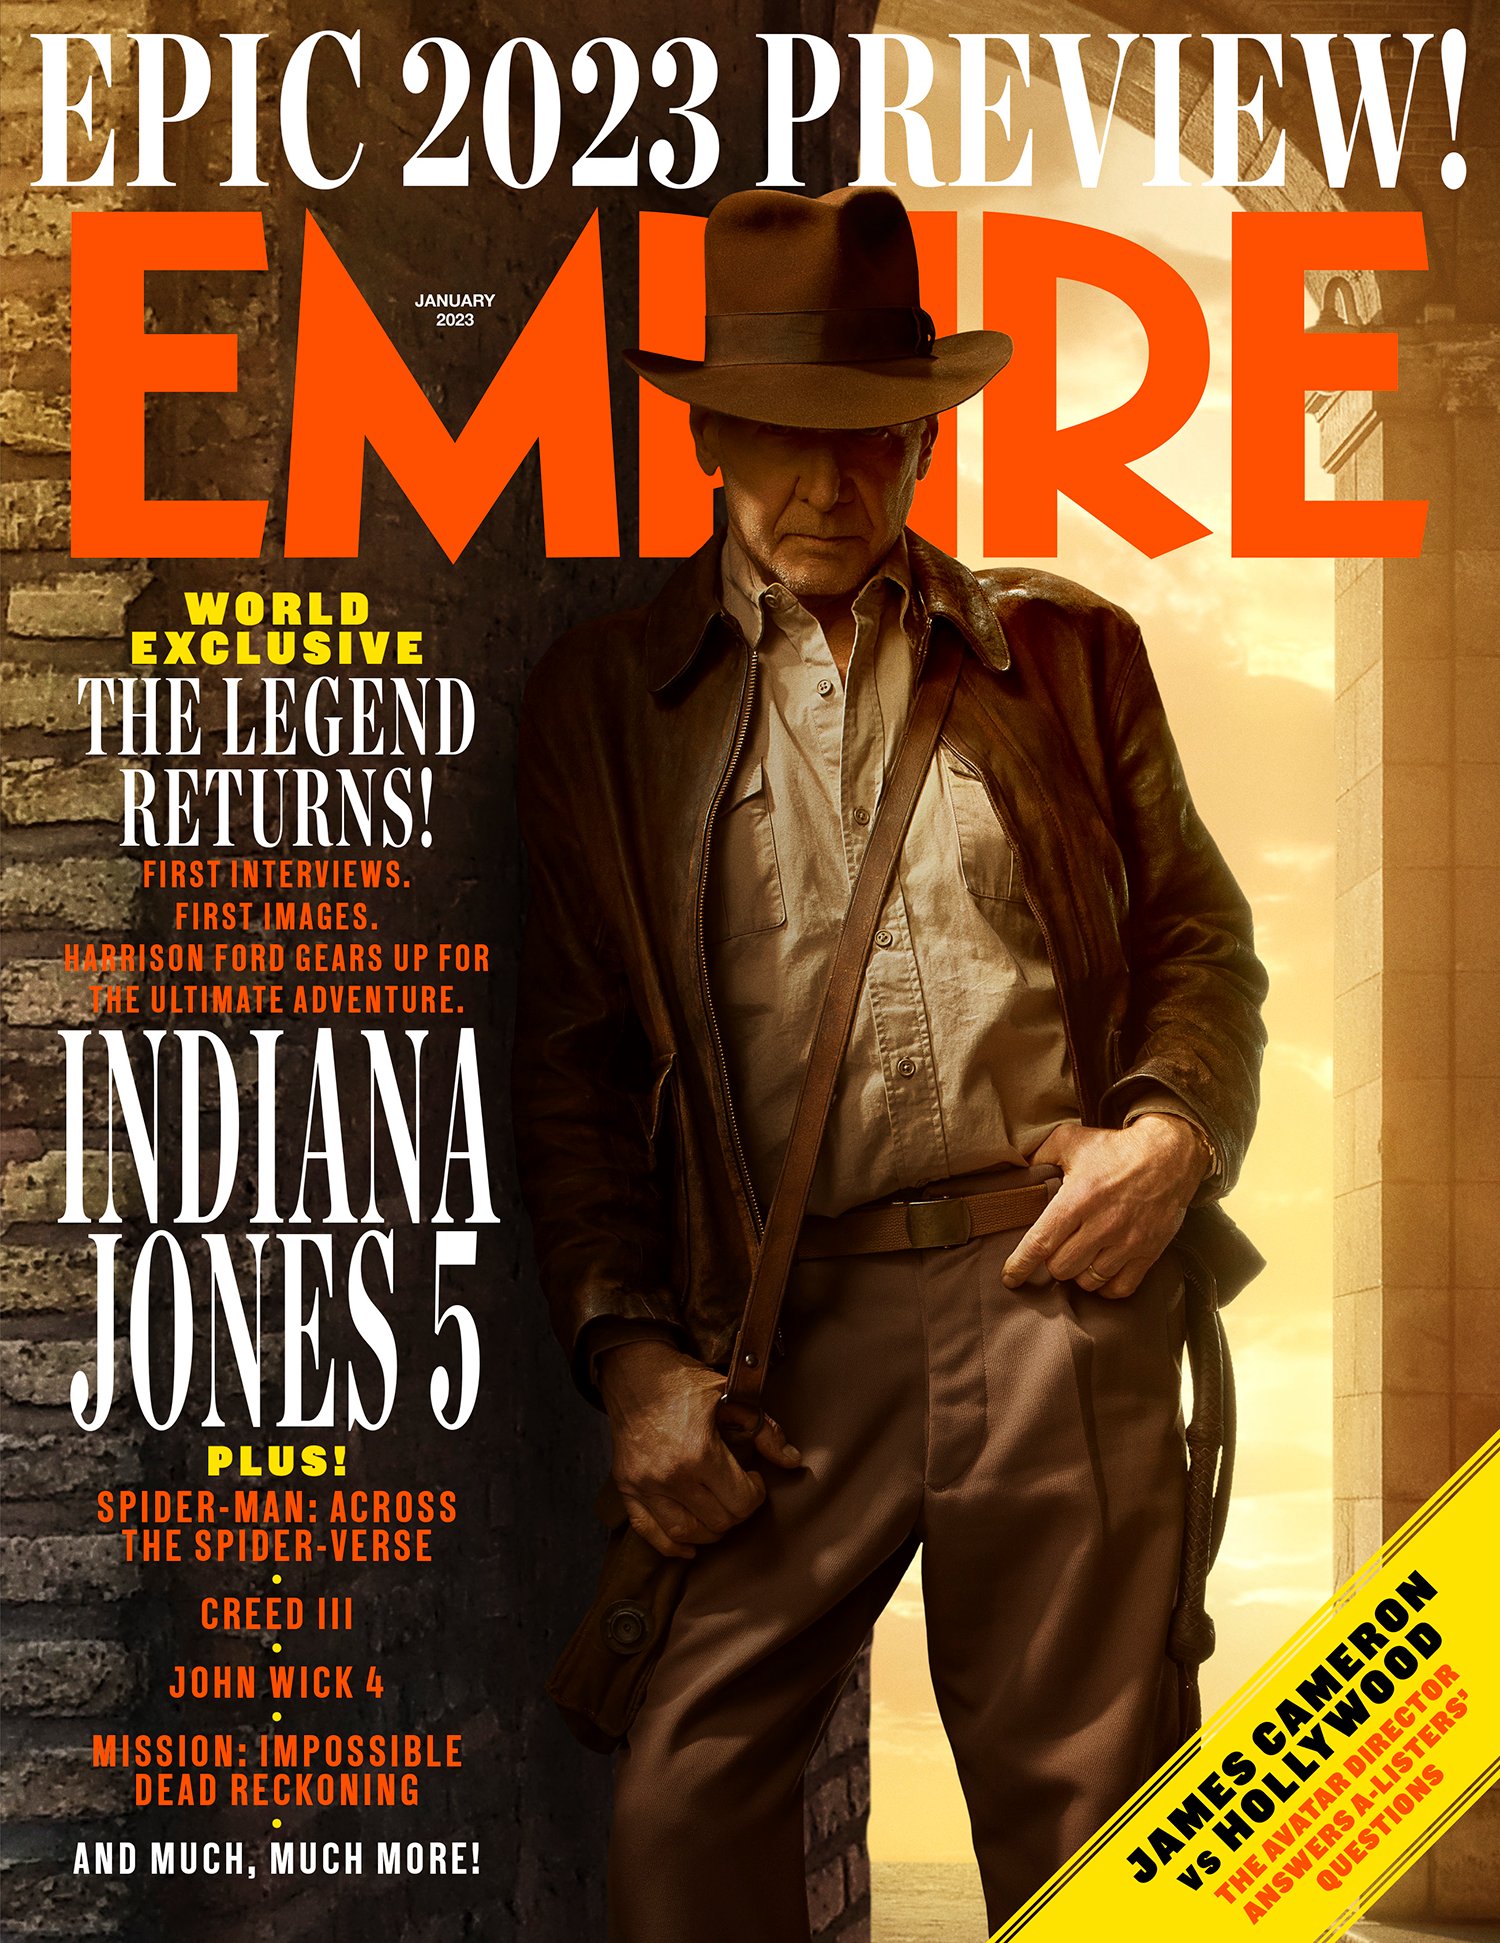 Novas fotos de Harrison Ford em "Indiana Jones 5"!